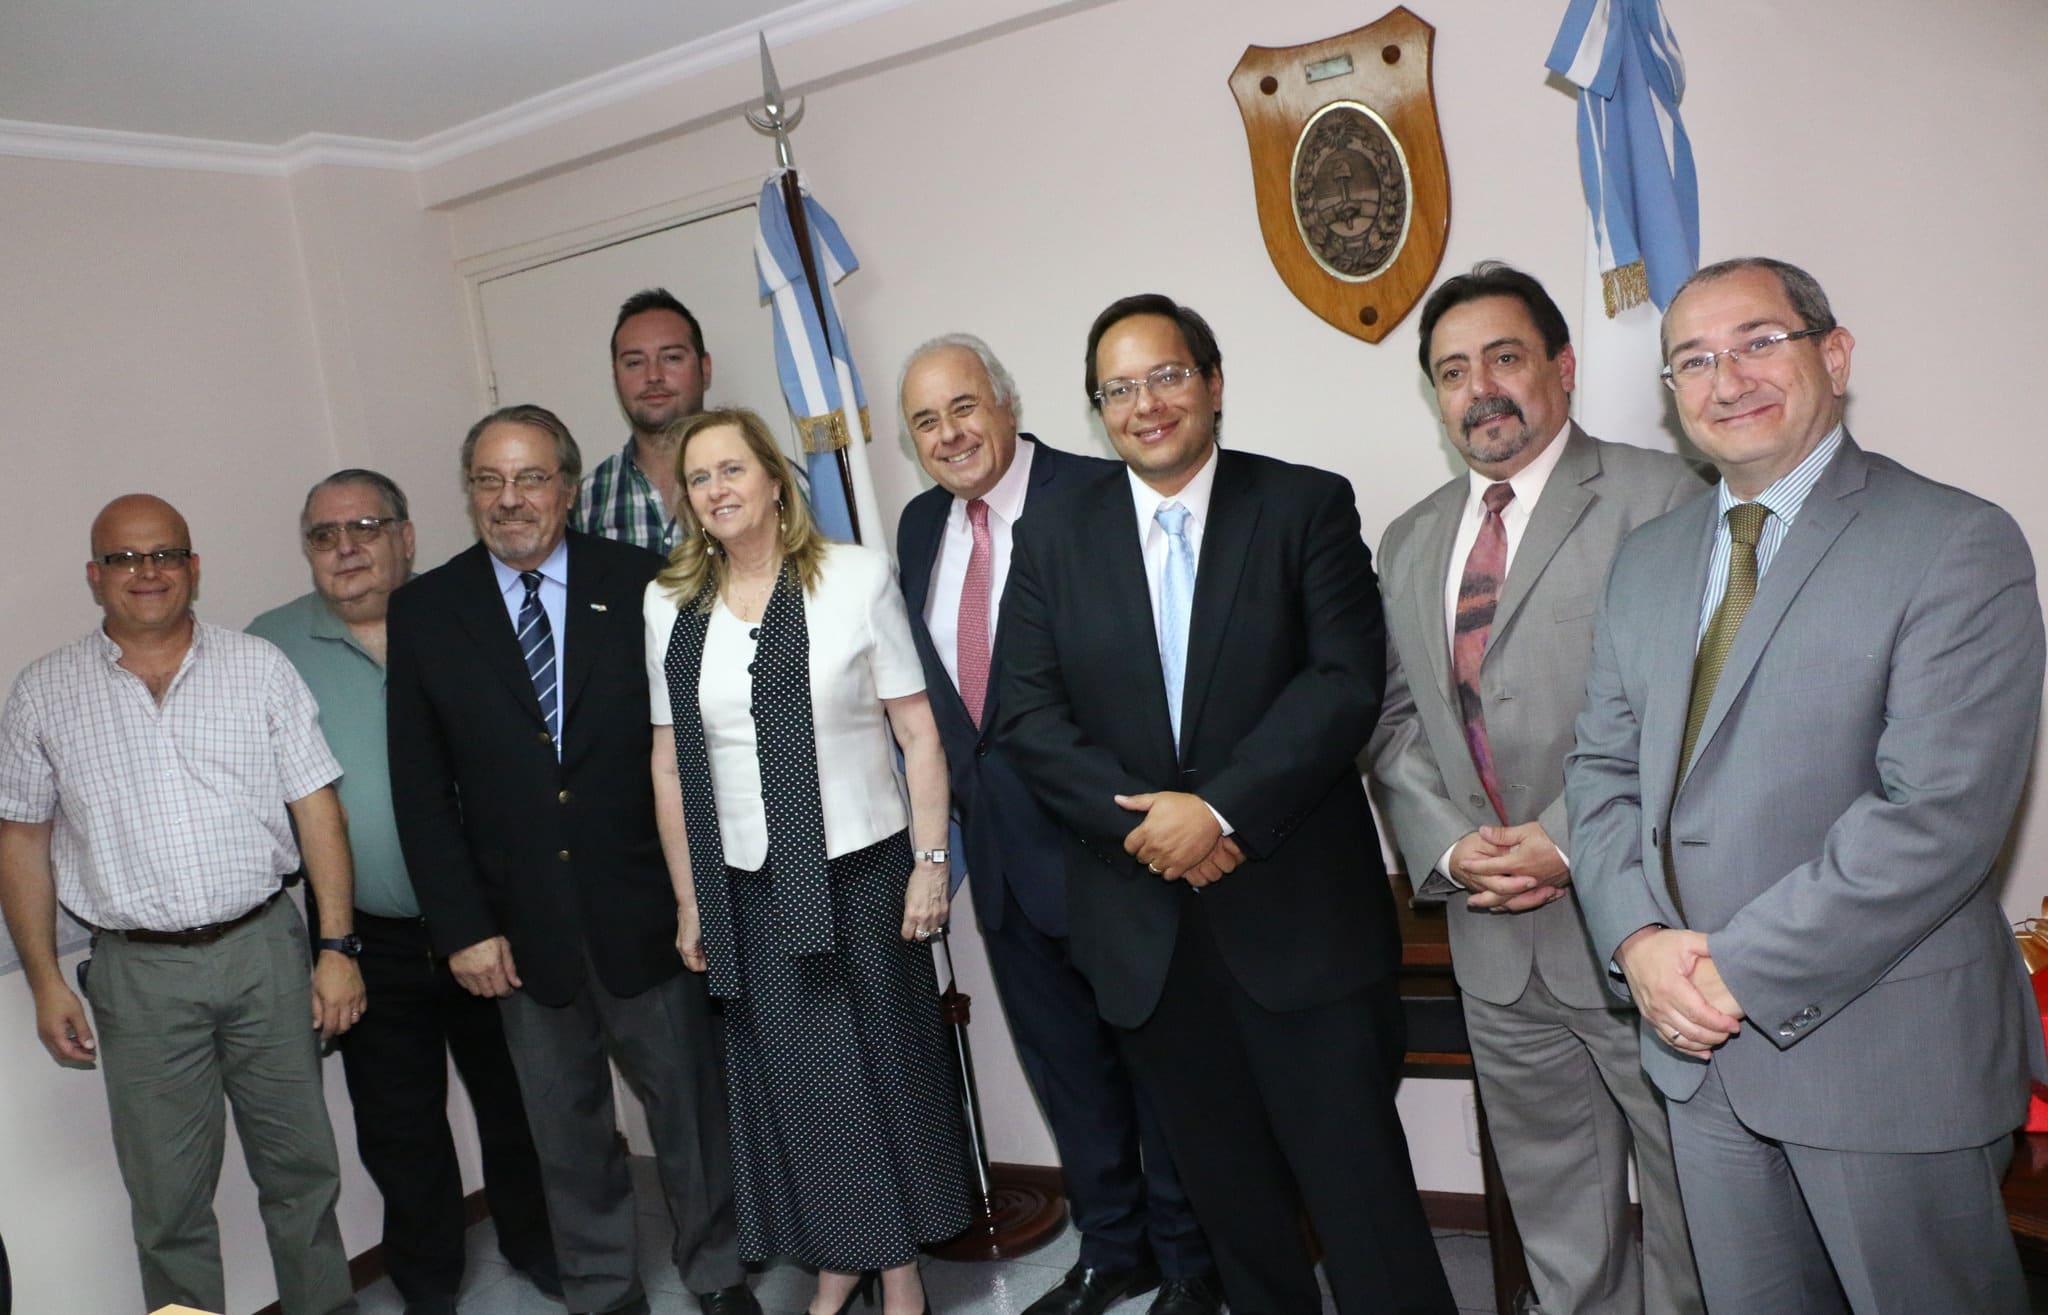 El vicegobernador Dr. Marcelo Lima, junto a la a la embajadora de Israel, Dorit Shavit y  el cónsul honorario de Israel en Cuyo, Gerardo Belinsky, entre otros miembros de la Sociedad Israelita y el Poder Legislativo de San Juan.  